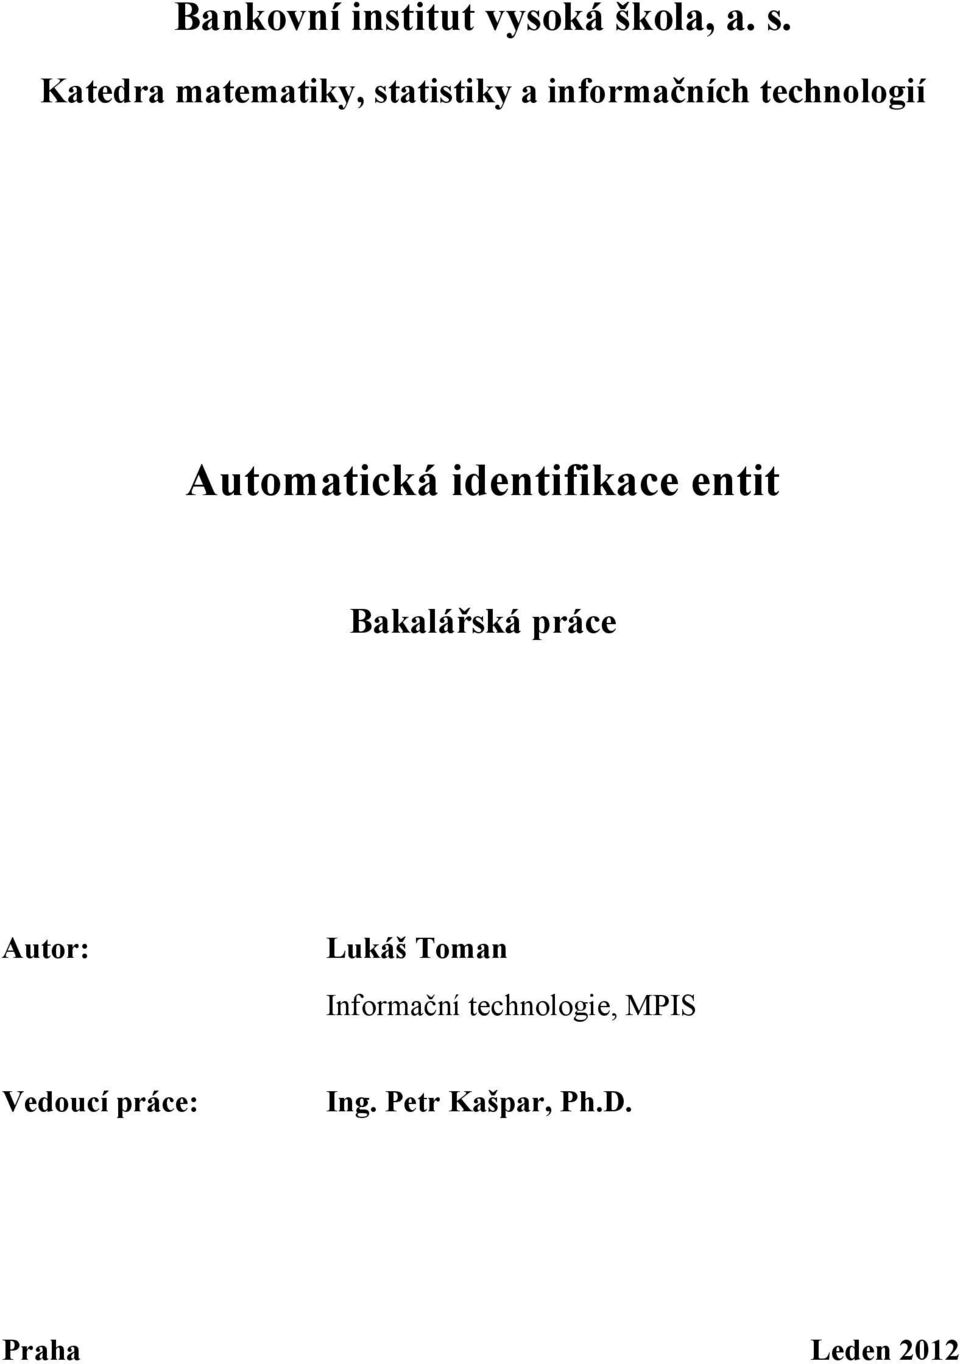 Automatická identifikace entit Bakalářská práce Autor: Lukáš